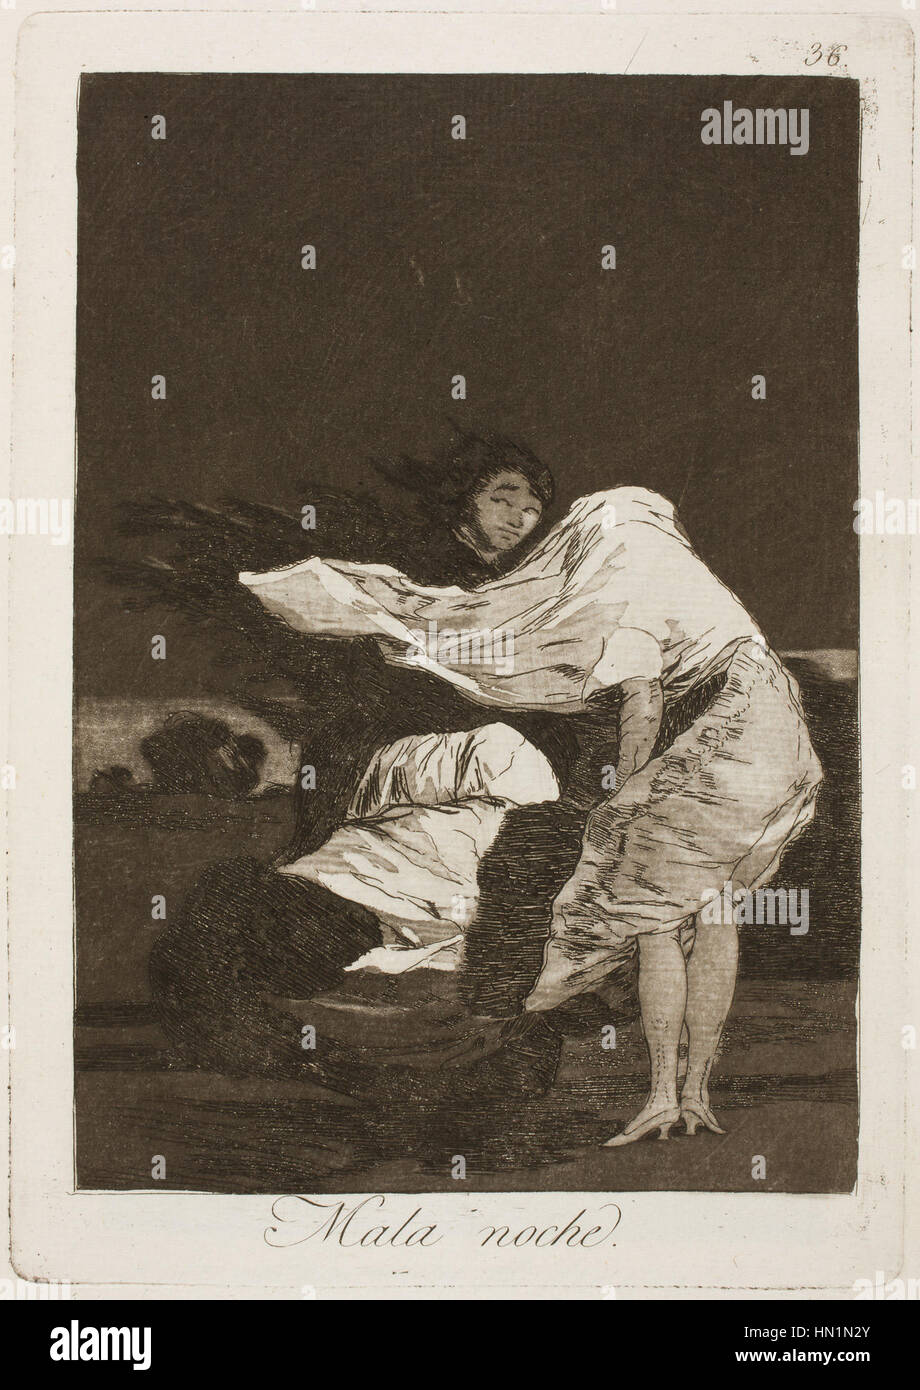 Museo del Prado - Goya - Caprichos - No. 36 - Mala noche Stock Photo